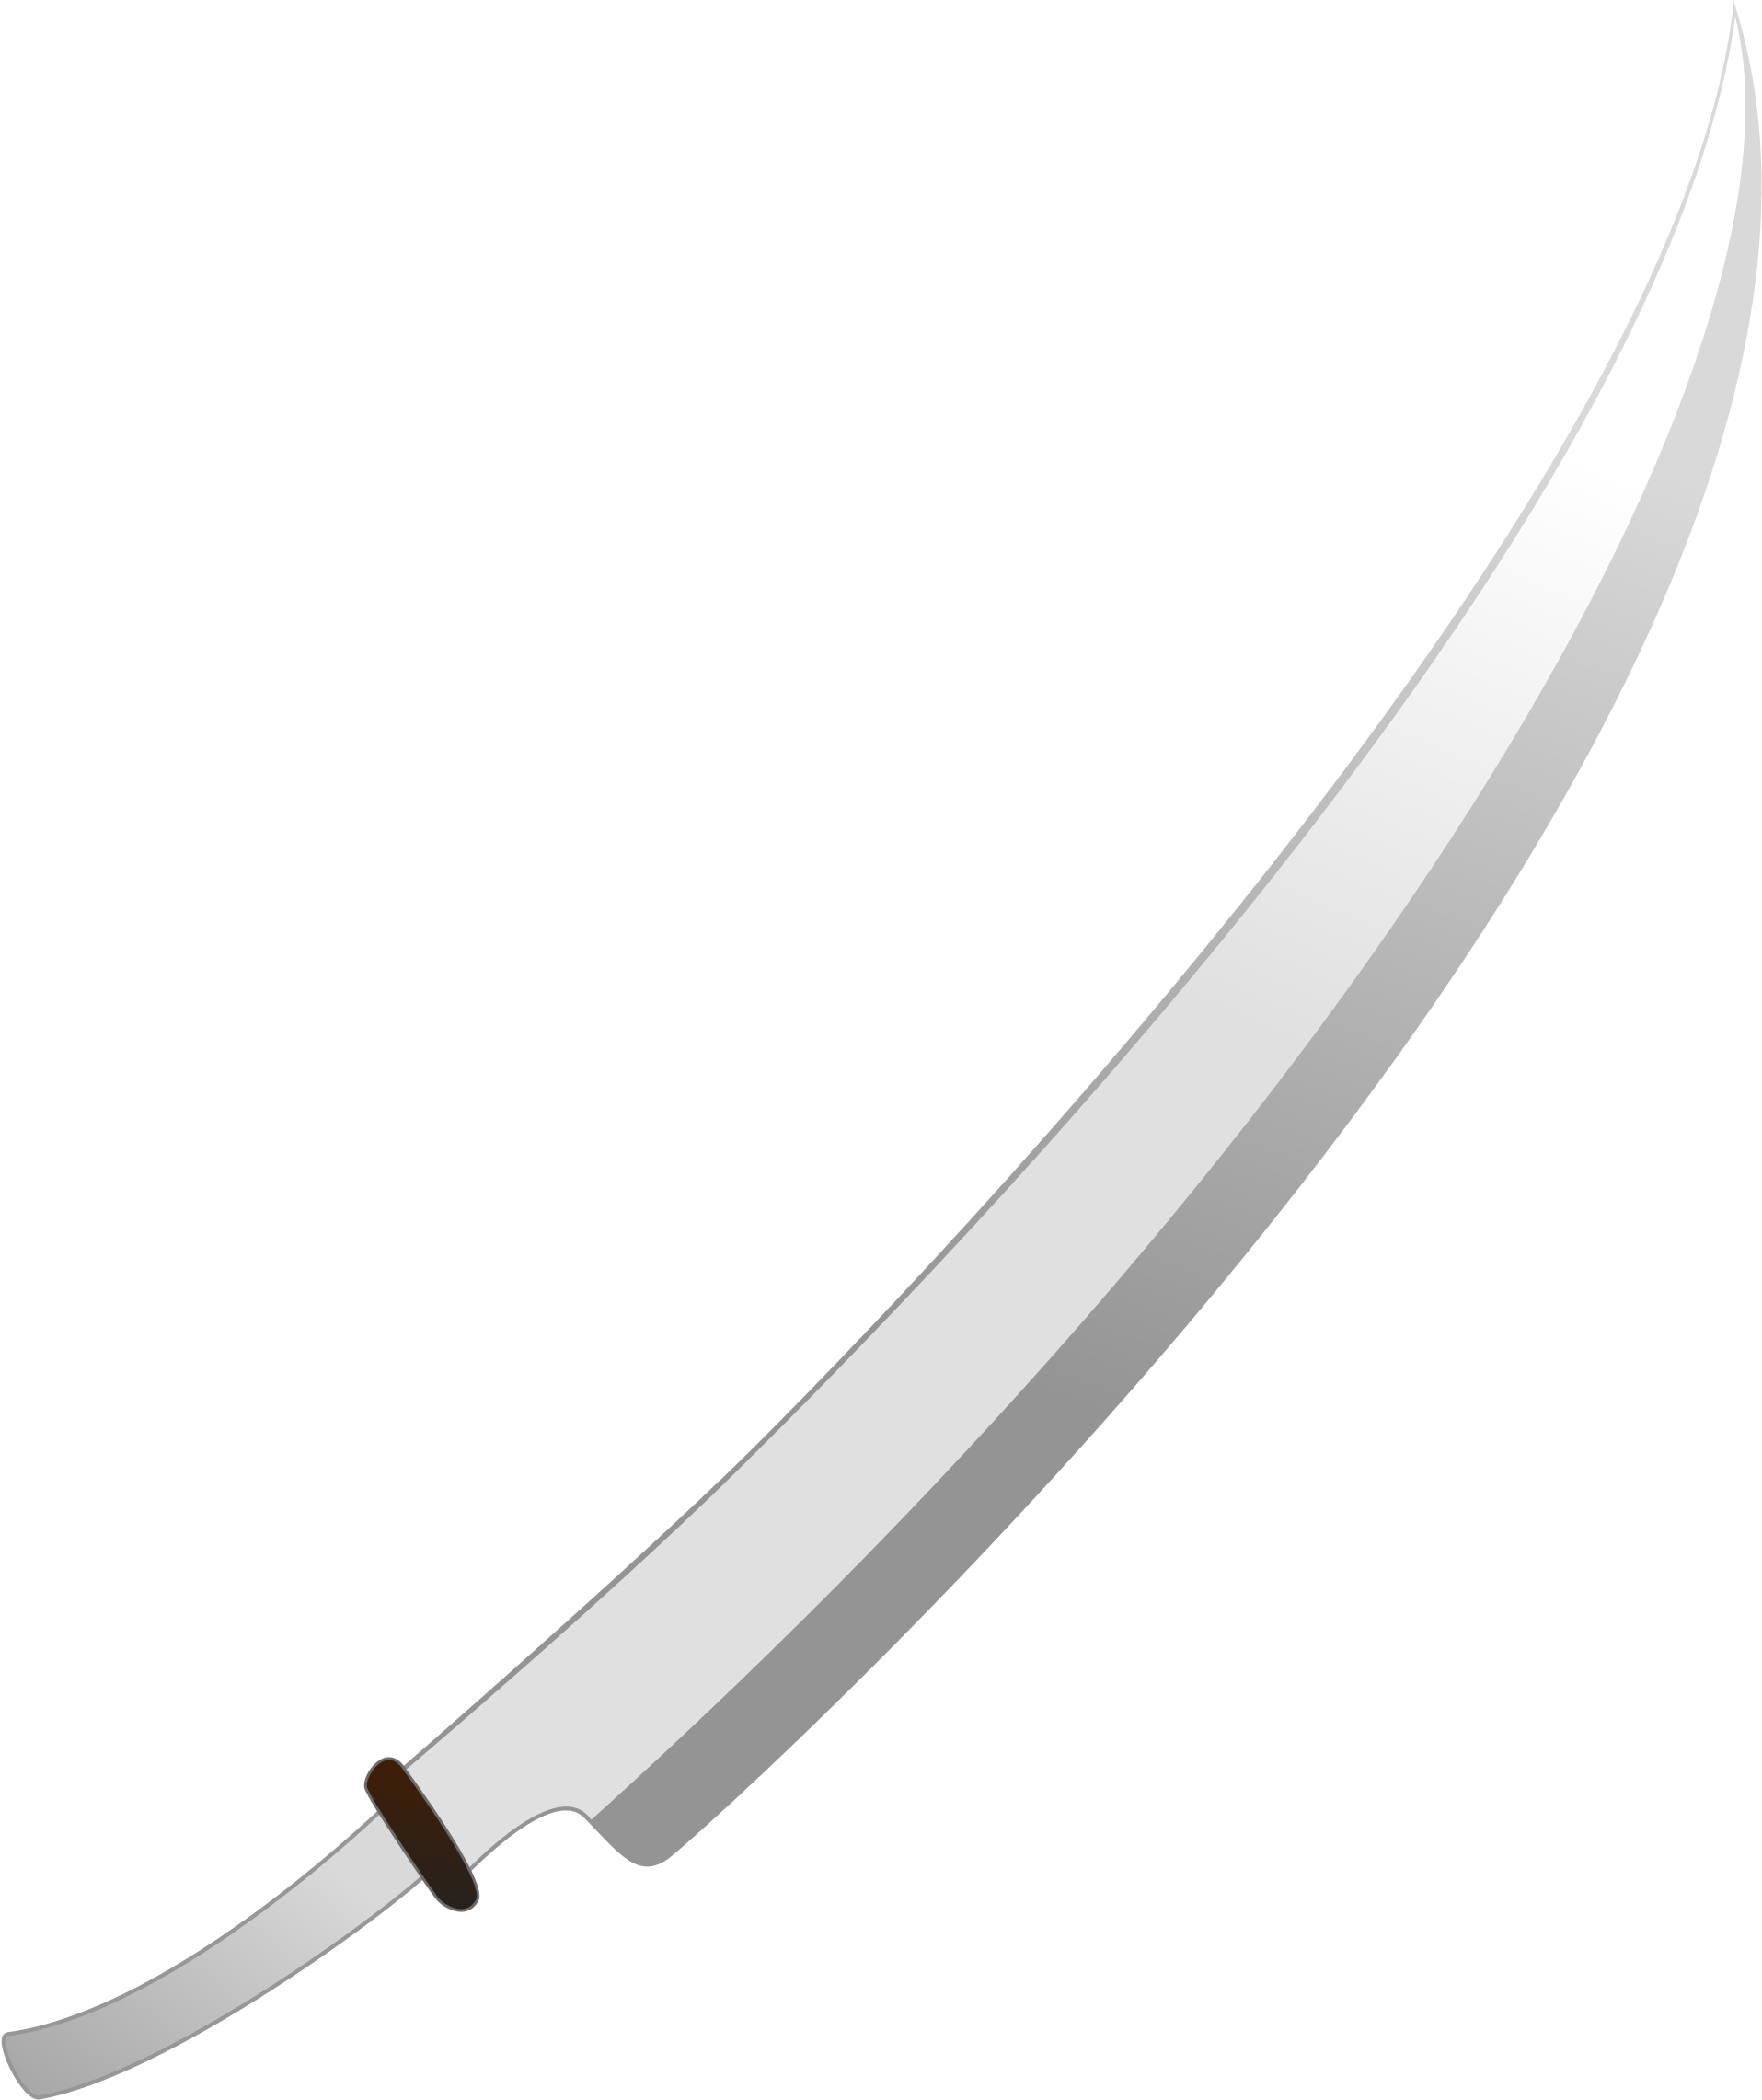 Big Image - Katana Sword (2036x2400)